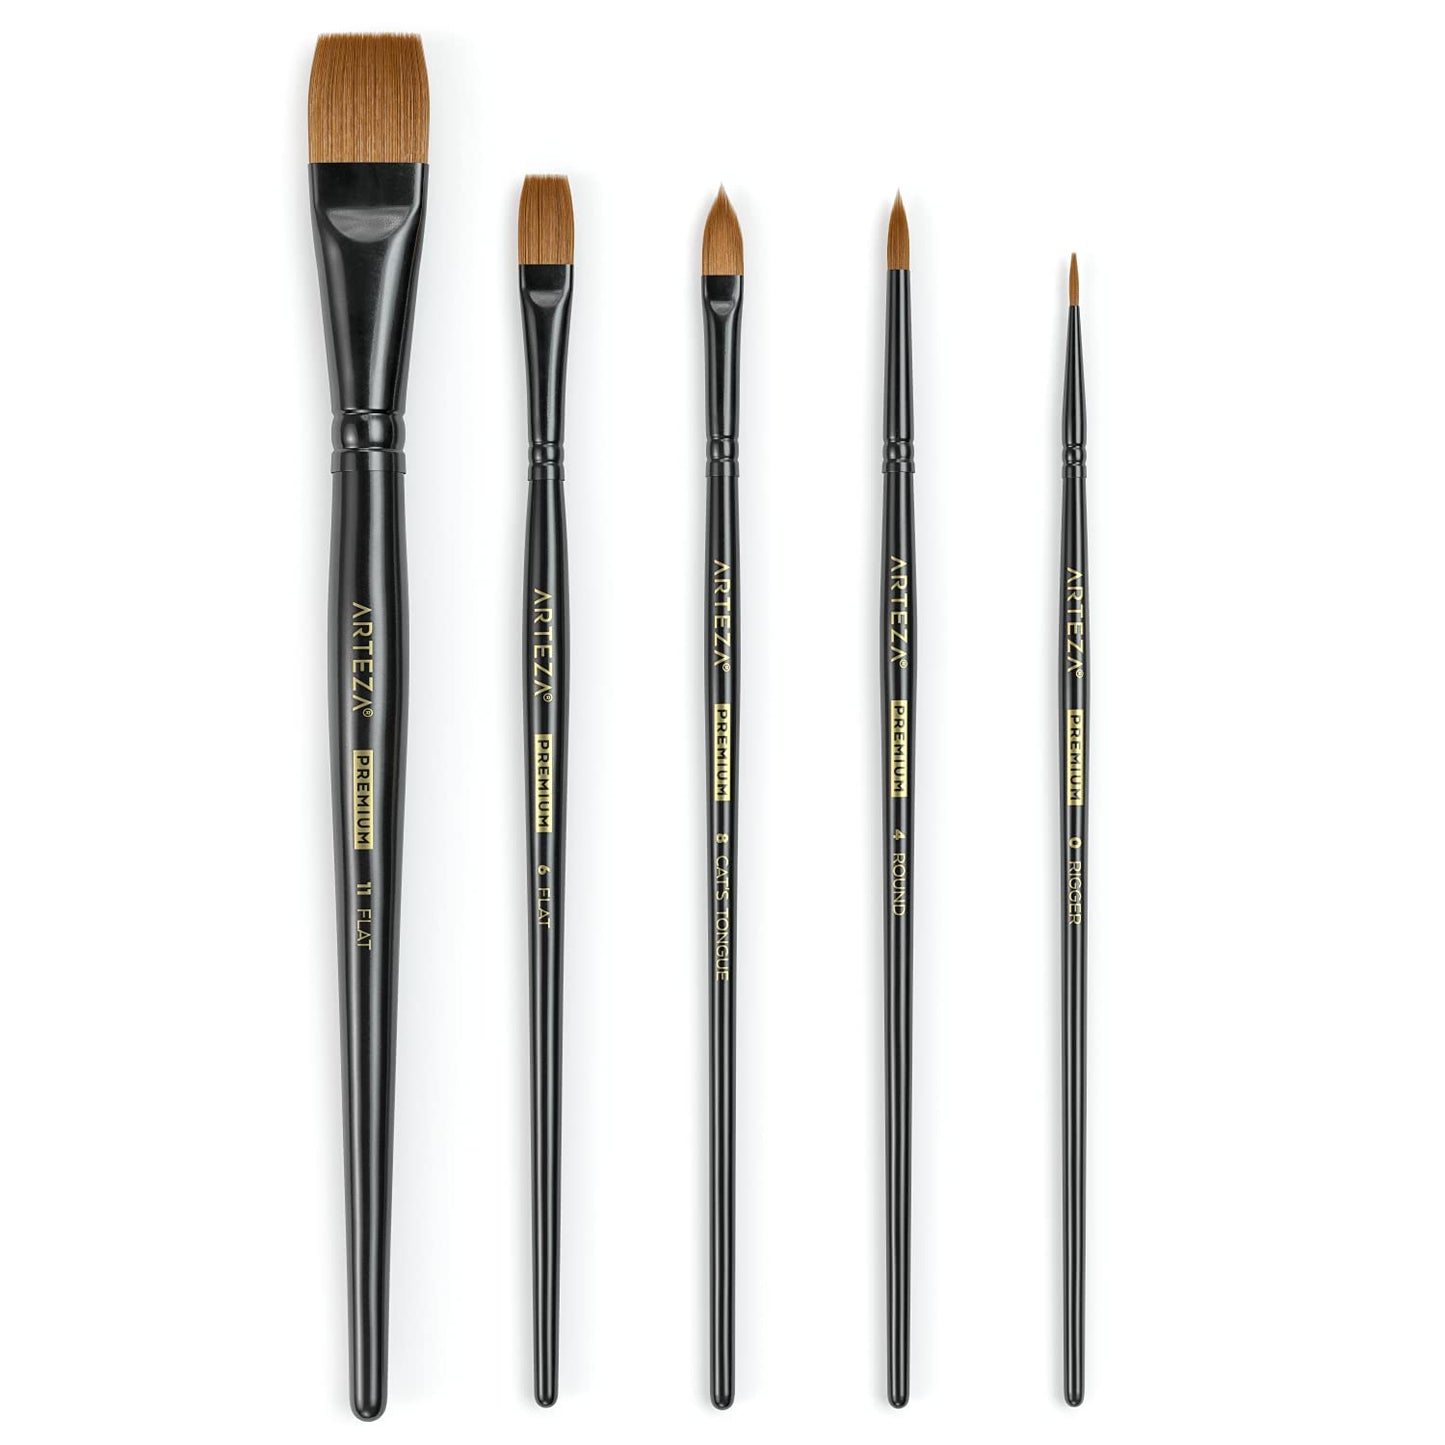 Arteza Acrylic & Oil Paint Brushes - Set of 5